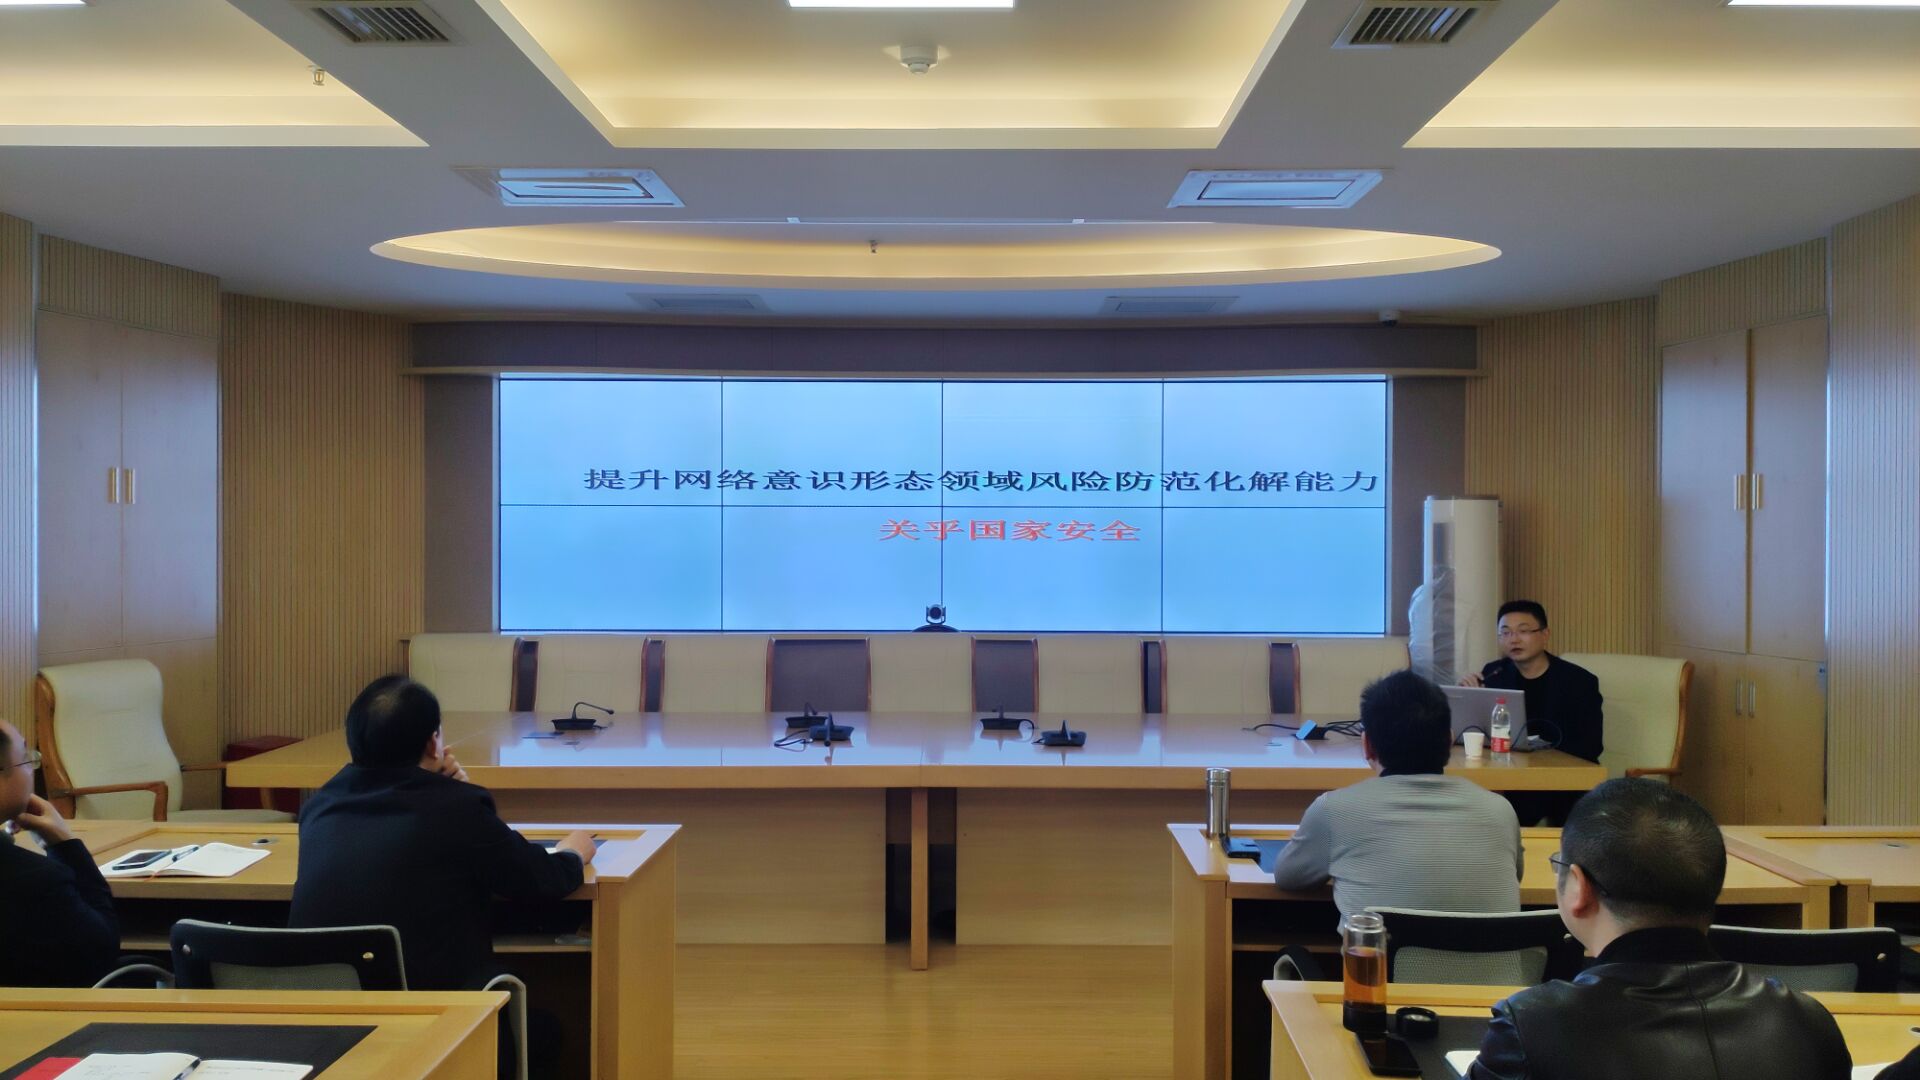 衡阳市统计局开展意识形态和网络安全专题讲座